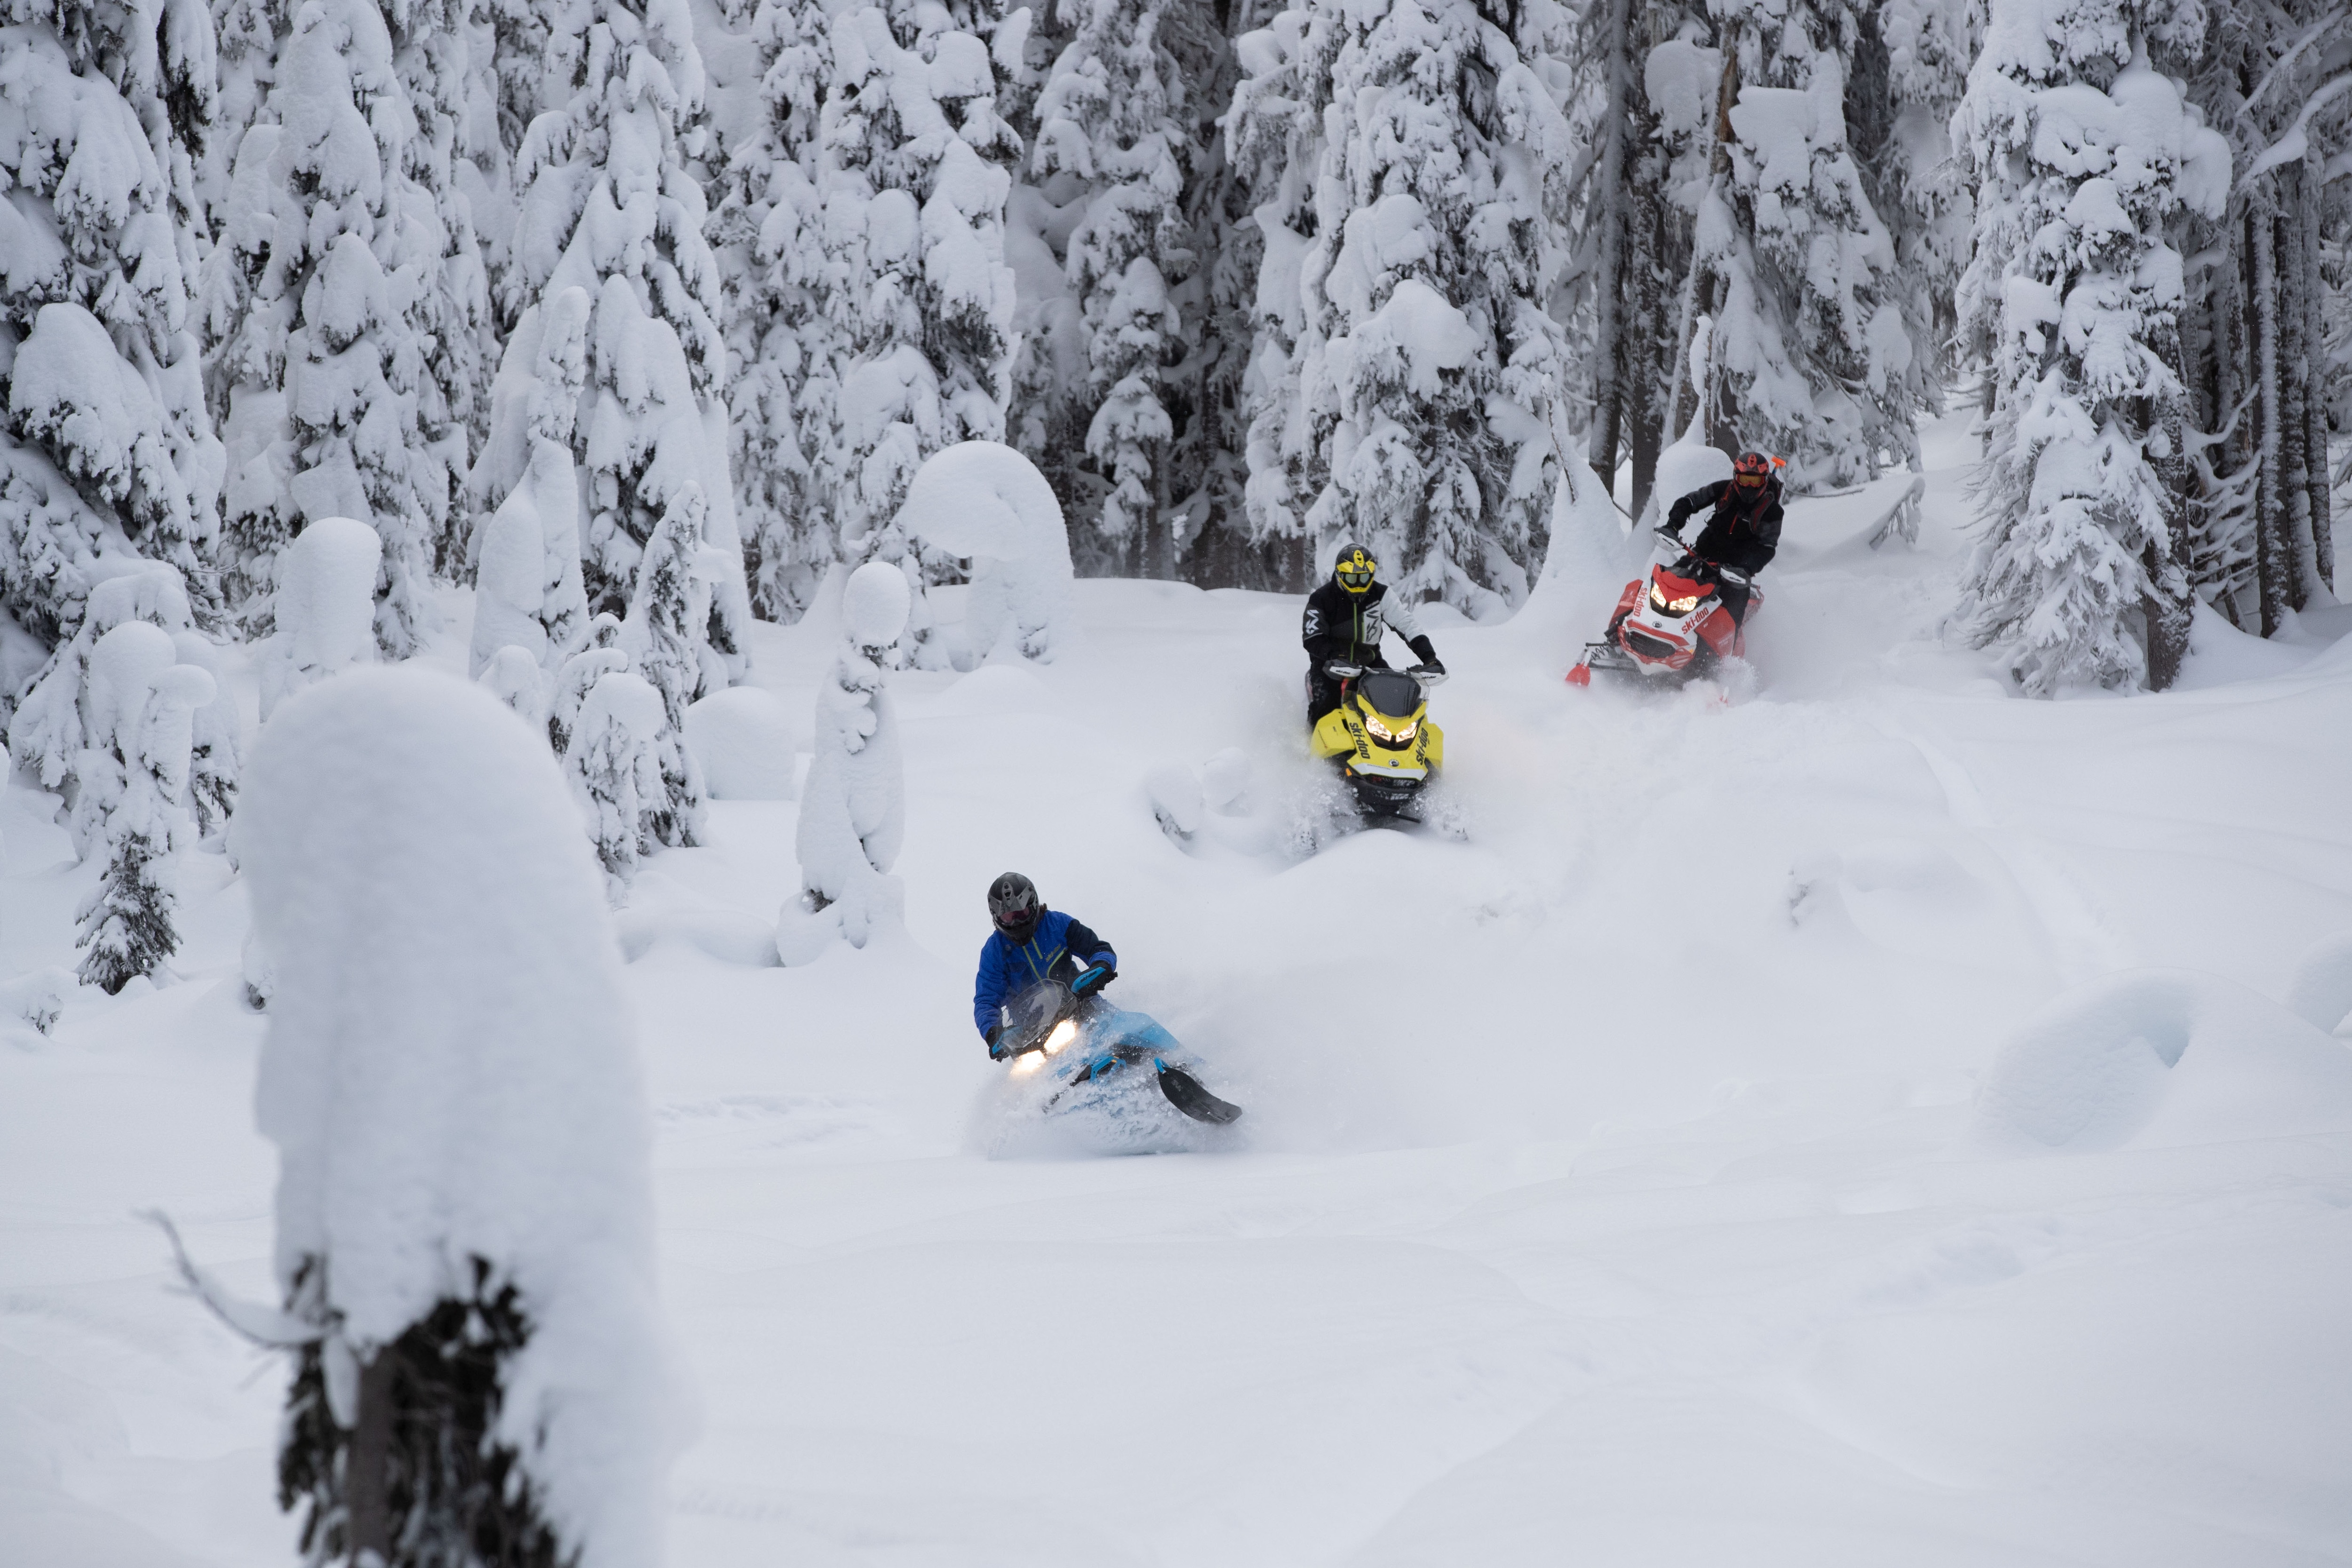 Tři přátelé jedoucí na sněžném skútru Ski-Doo hlubokým sněhem